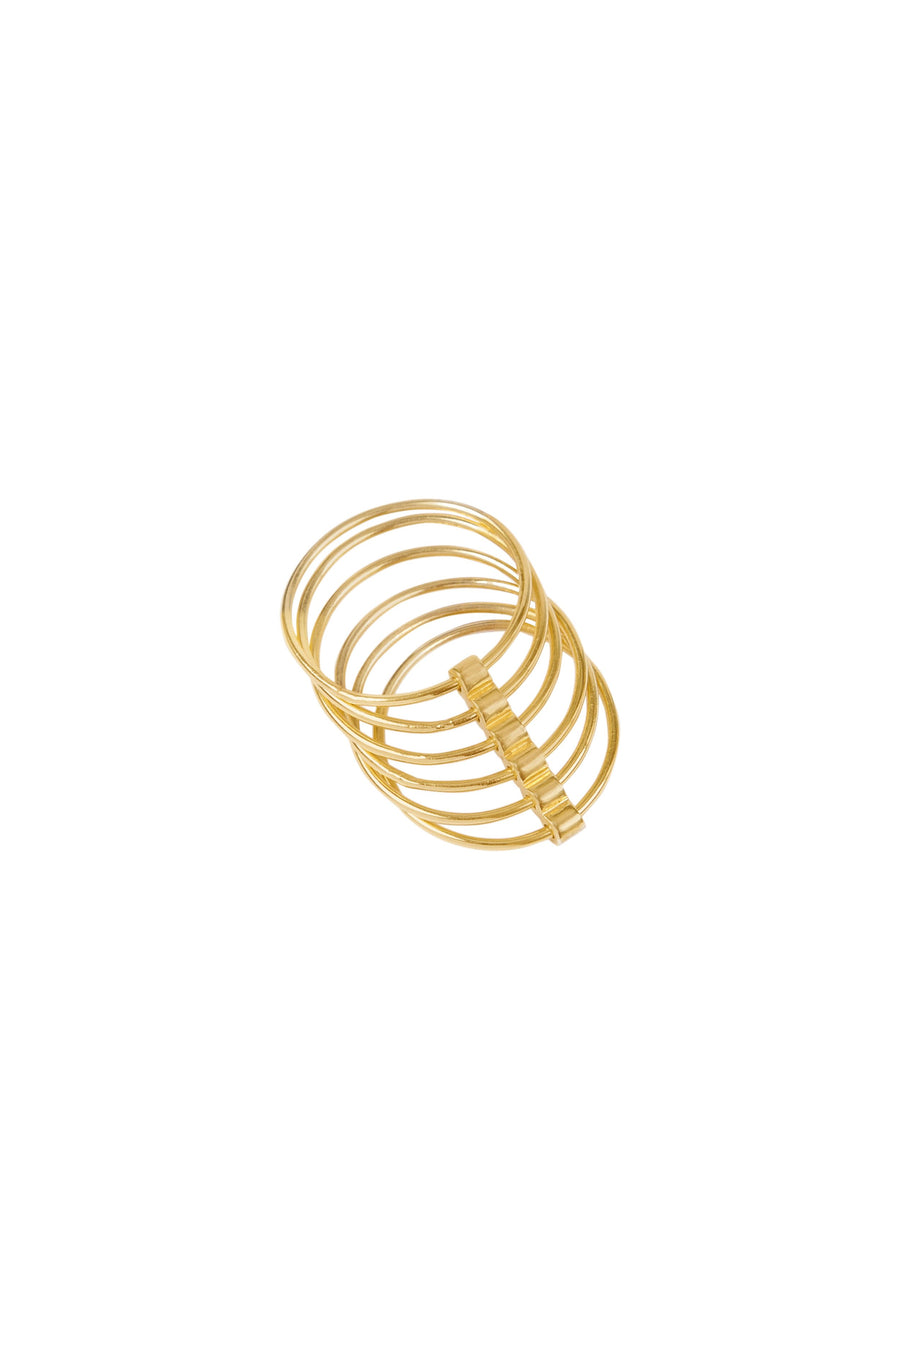 Gold Hoop Ring